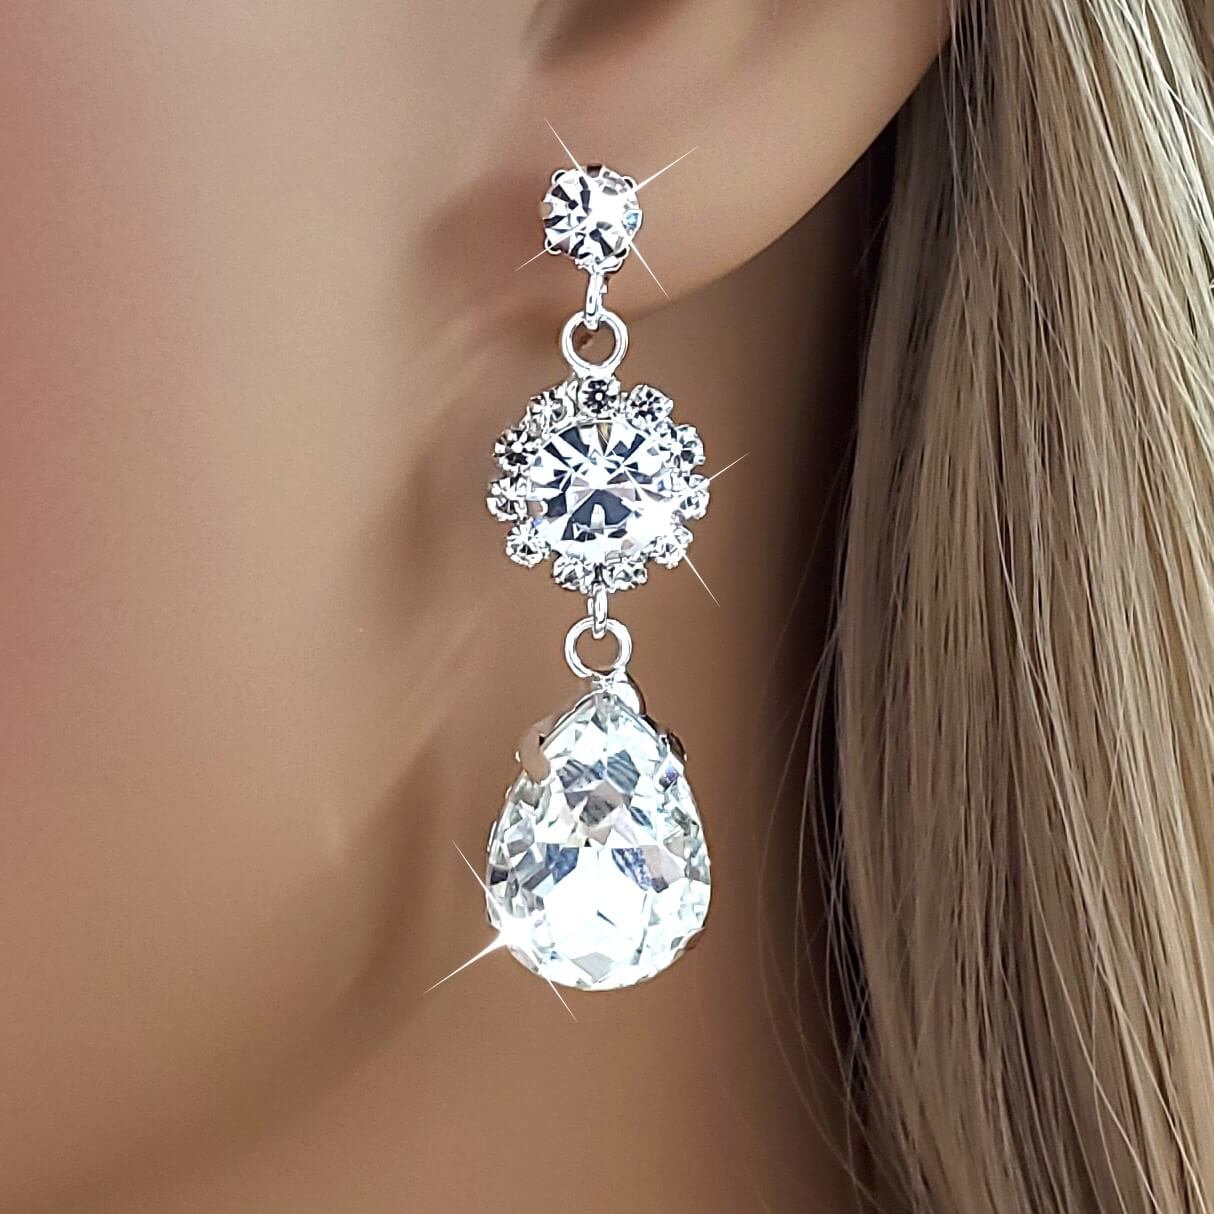 Elegant Teardrop Crystal Silver Gold Dangle Drop Earrings